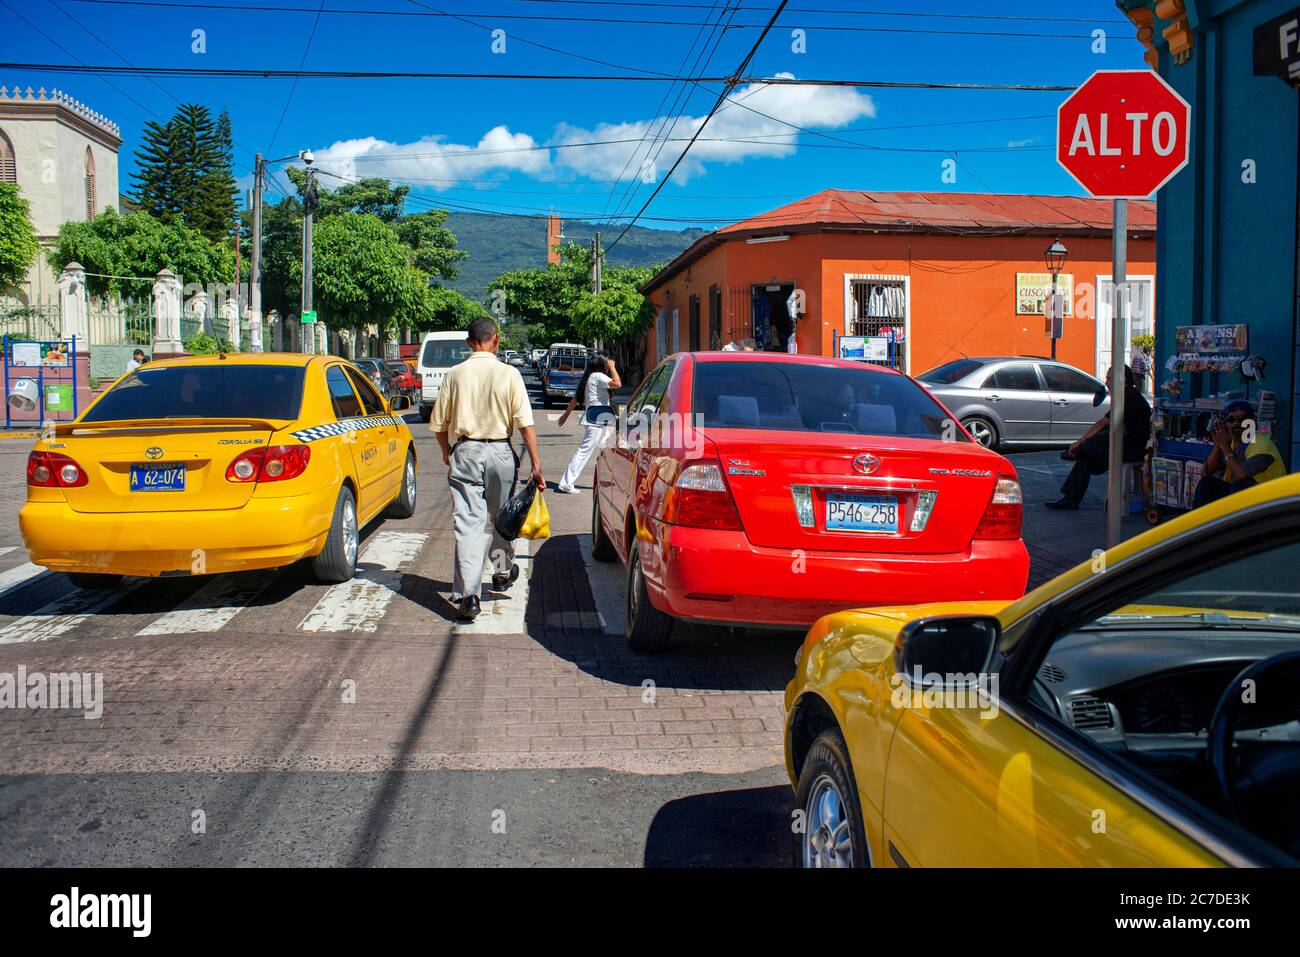 San Salvador city center. Taxis in the street in Santa Tecla neighborhood. El Salvador, Central America. Stock Photo